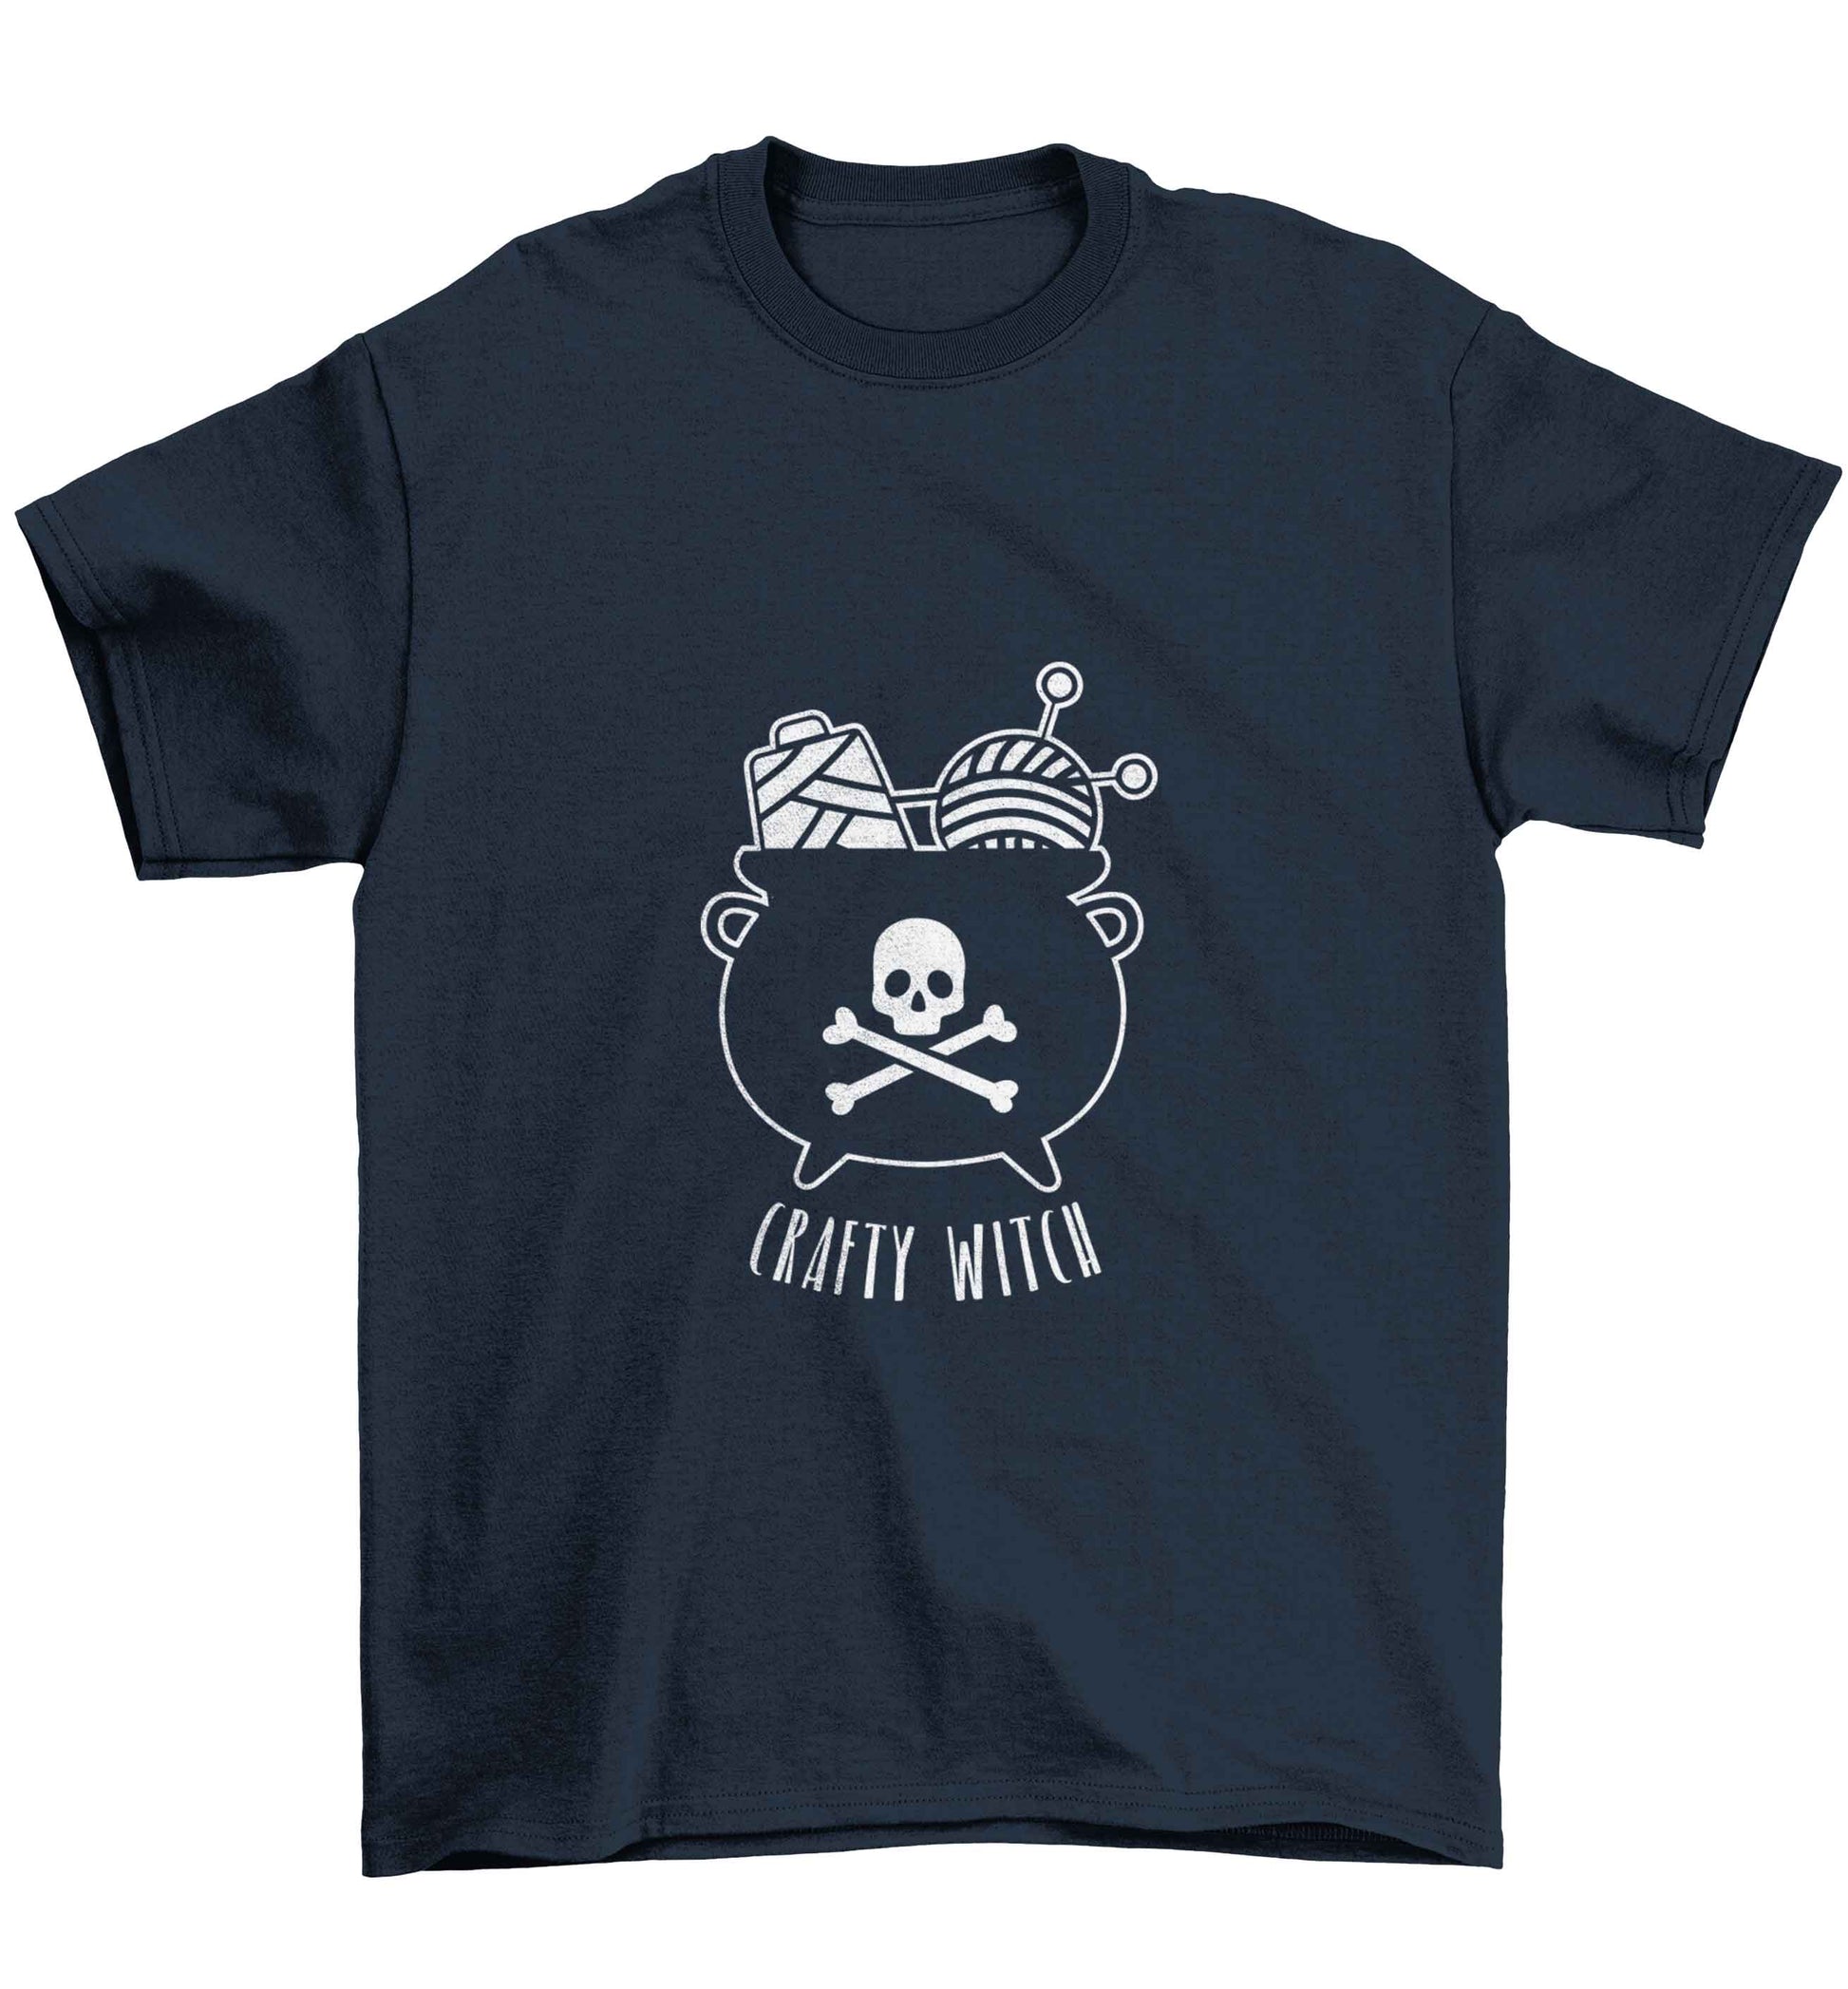 Crafty witch Children's navy Tshirt 12-13 Years